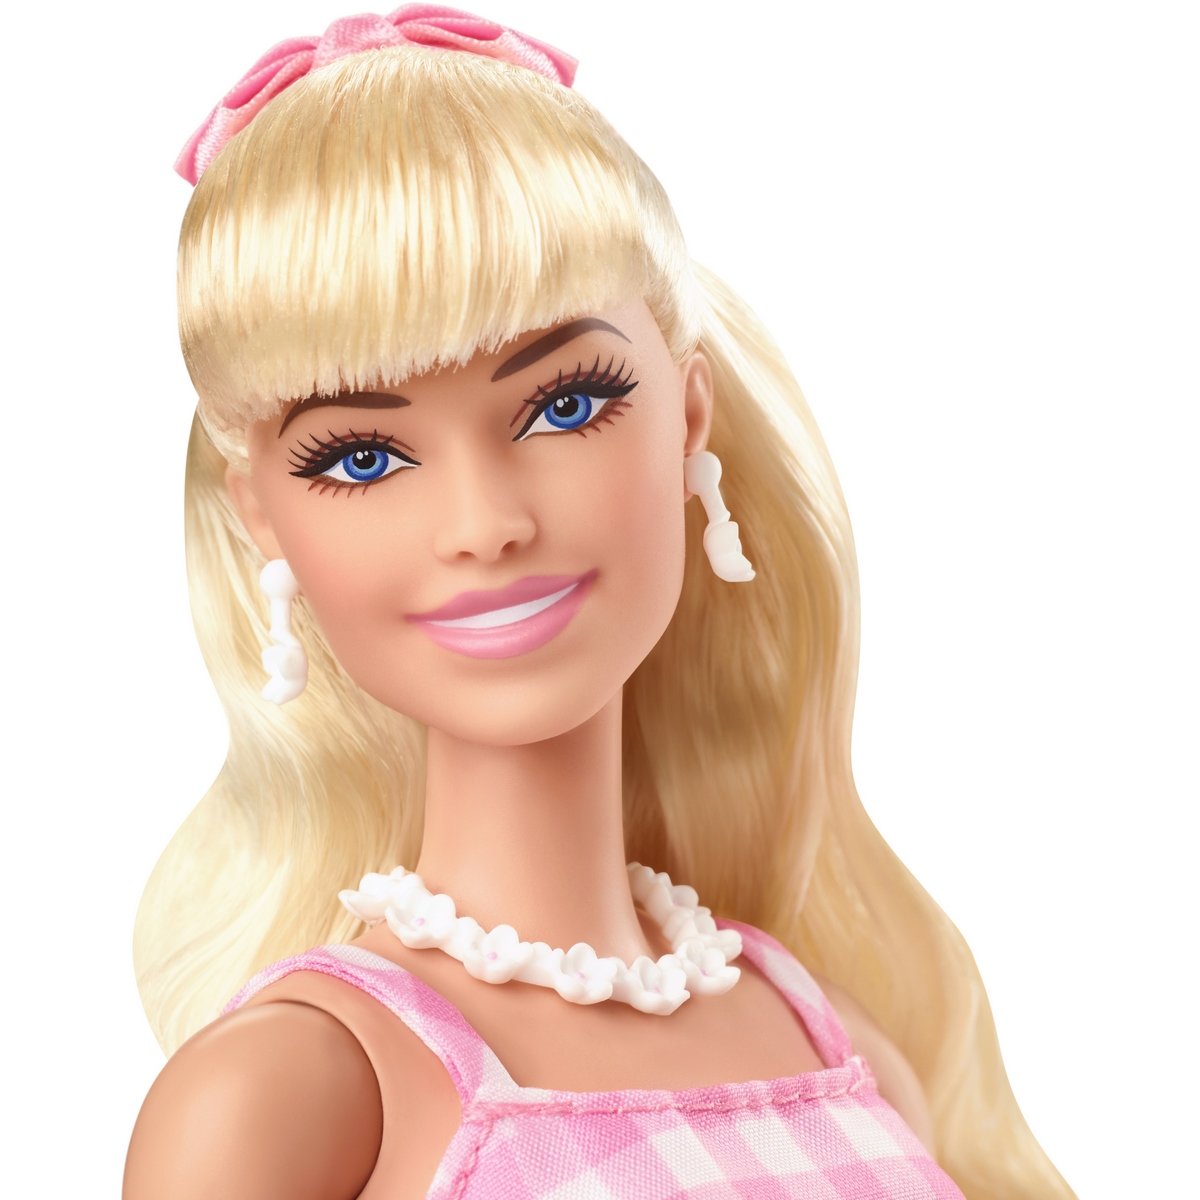 Barbie grande poupee blonde, poupees